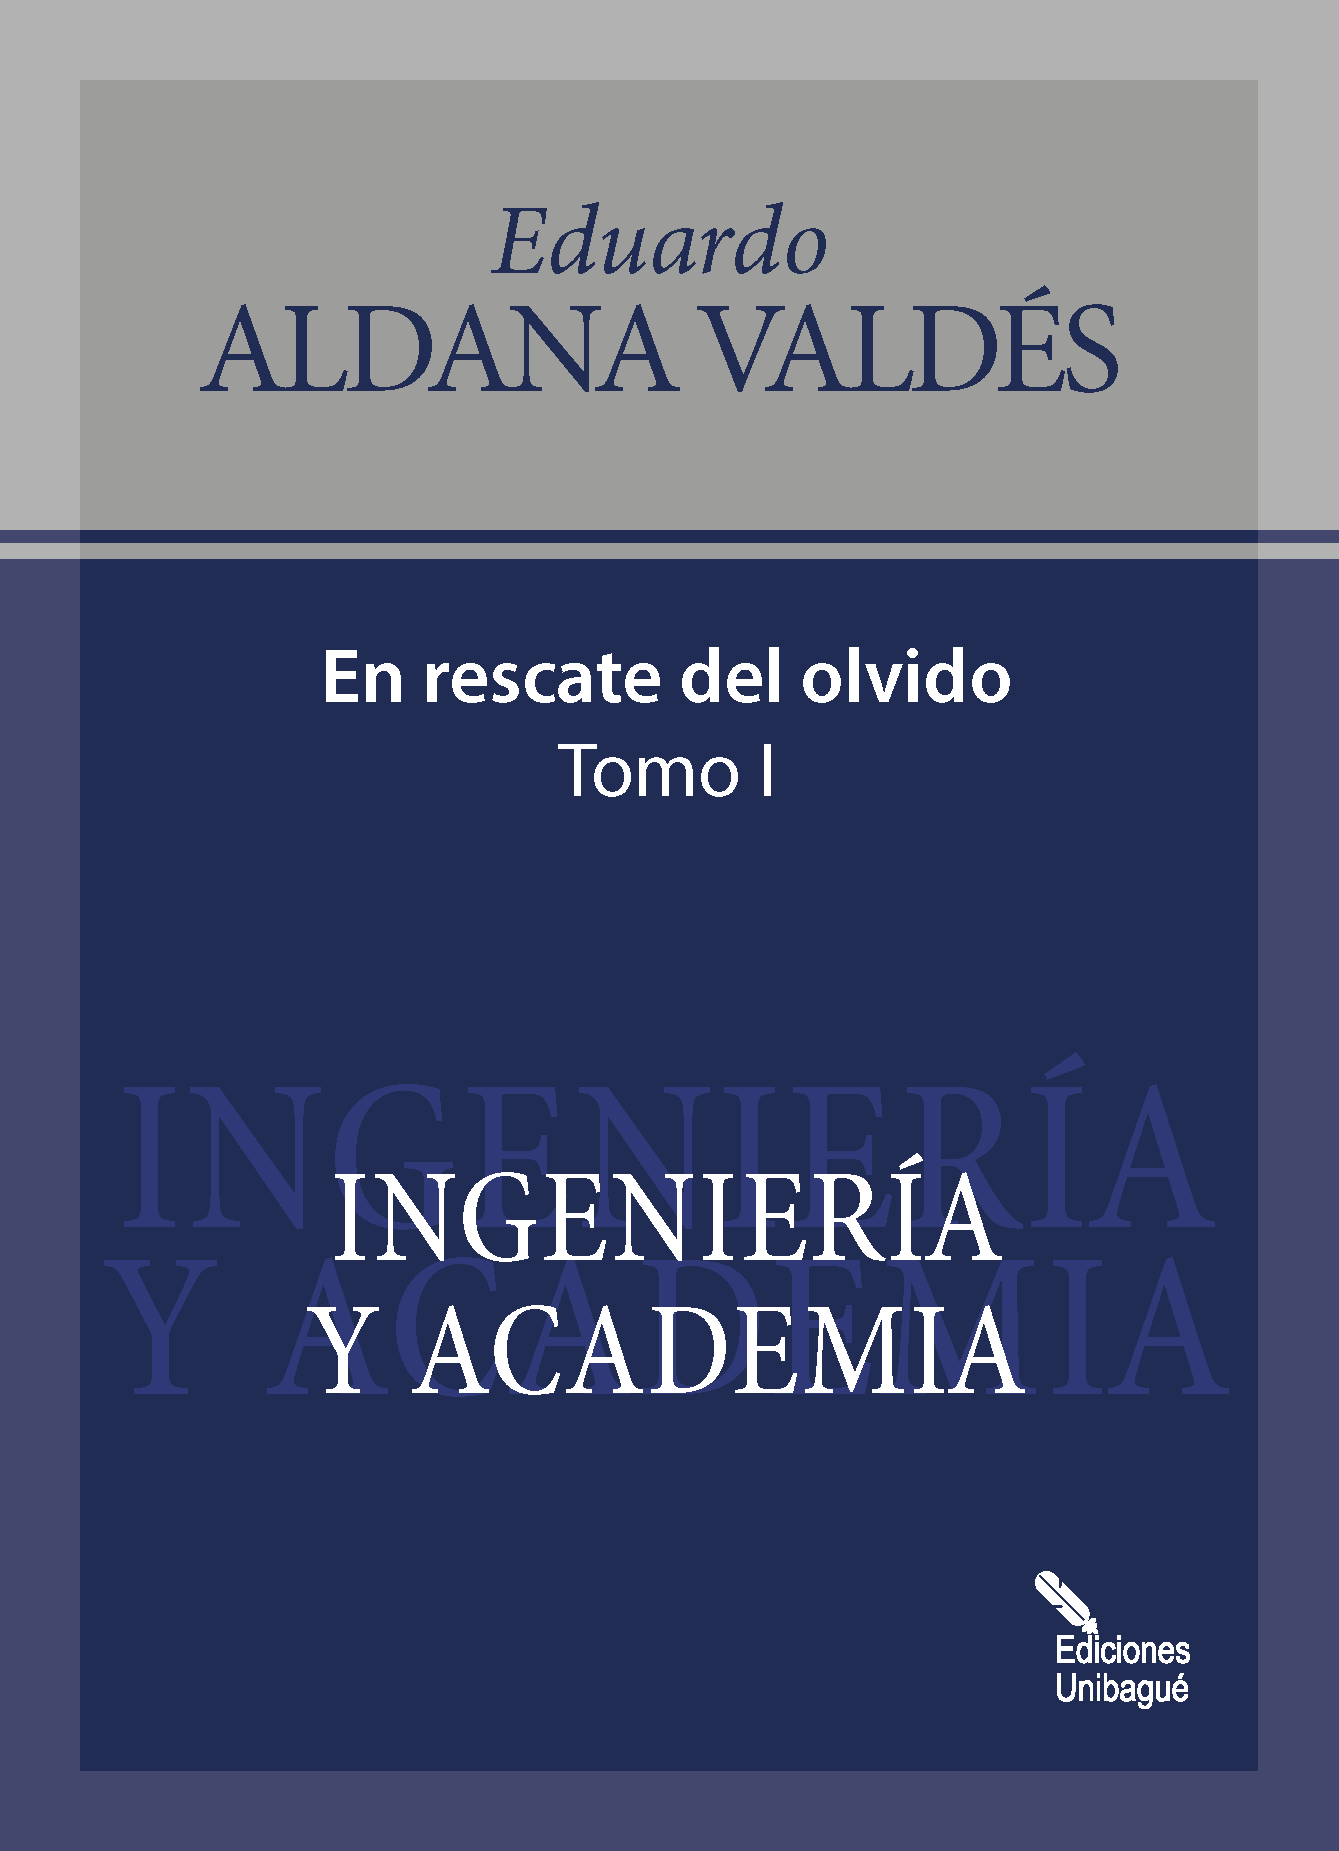 Cover of Ingeniería y Academia